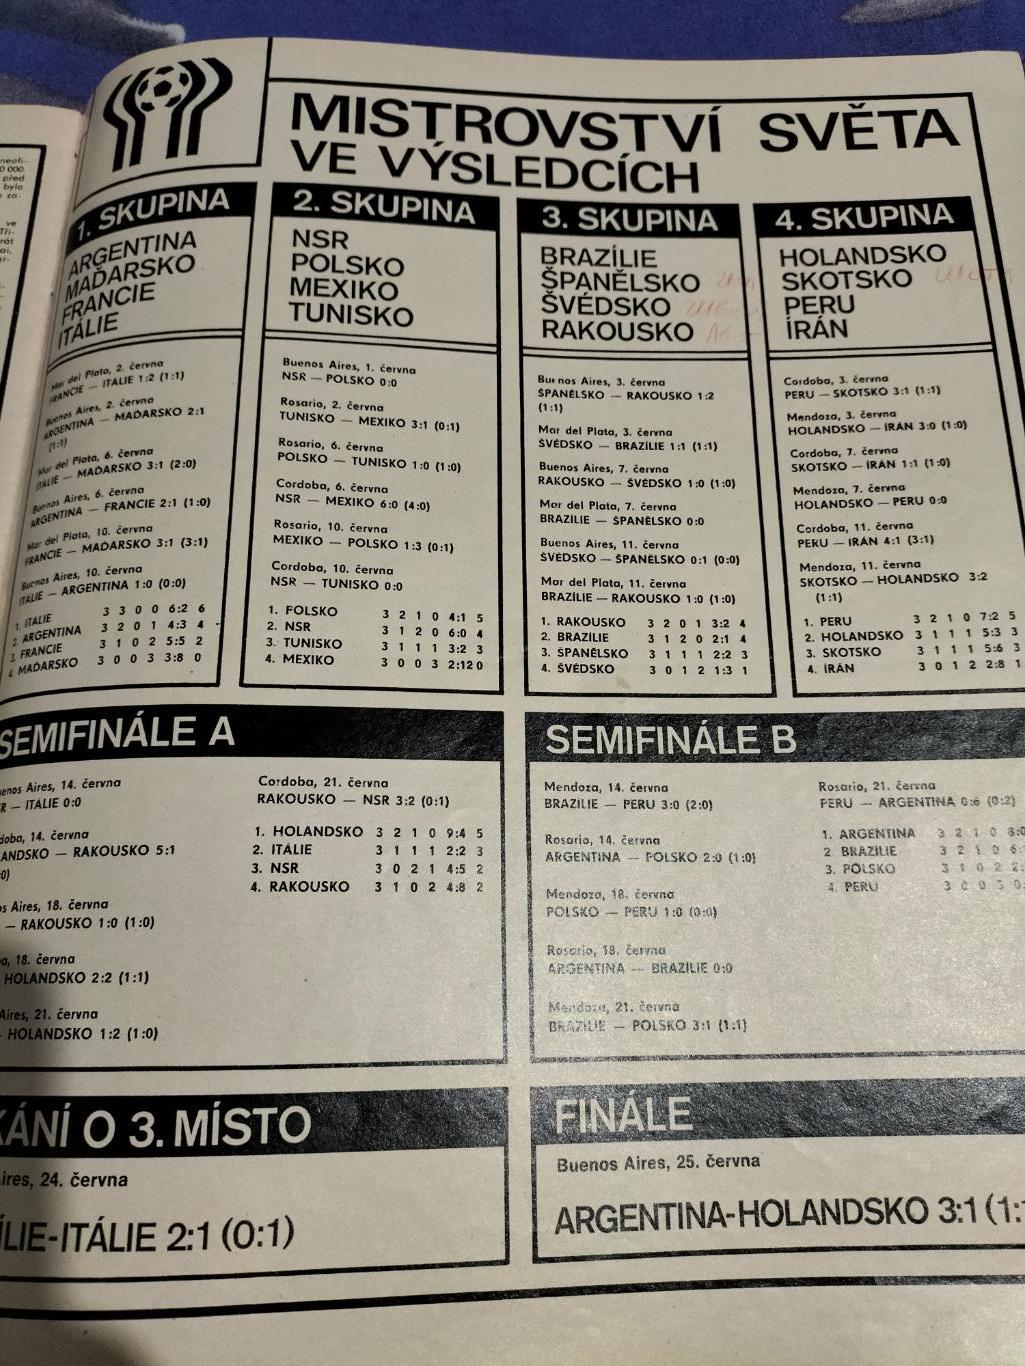 Журнал Stadion №31 1978 год(итоги Чемп.Мира-1978) 7